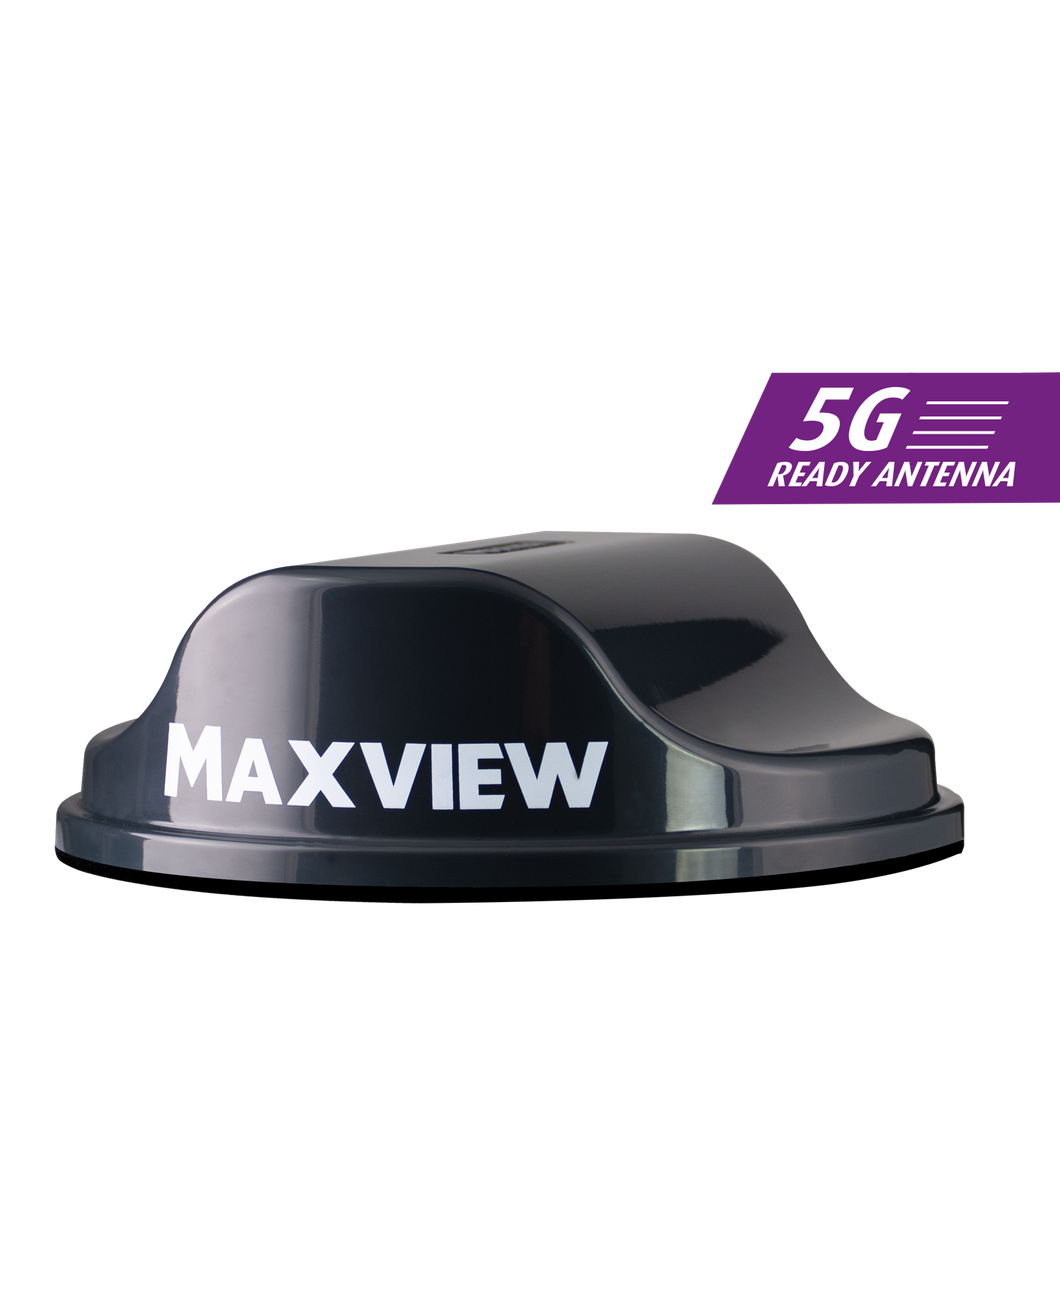 MAXVIEW ROAM X mit Appsteuerung - Paket schwarz oder weiß inkl. kostenfreier Datenkarte und 10 GB Startguthaben